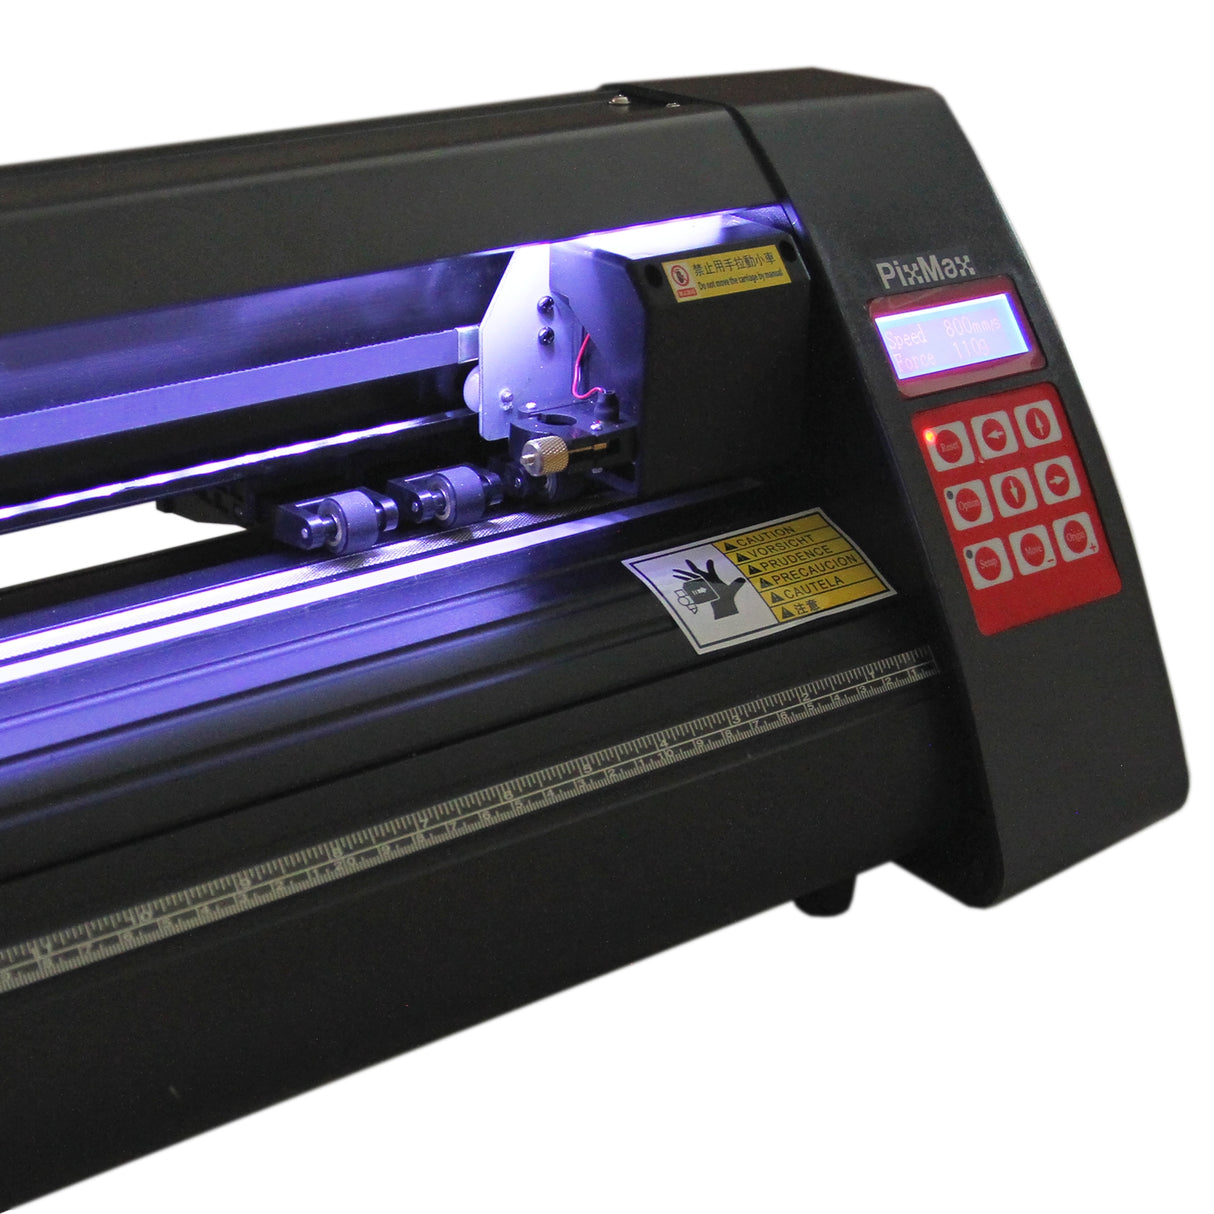 PixMax Da Vinci Bundle 5 in 1 Heat Press, LED Vinyl Cutter, Printer